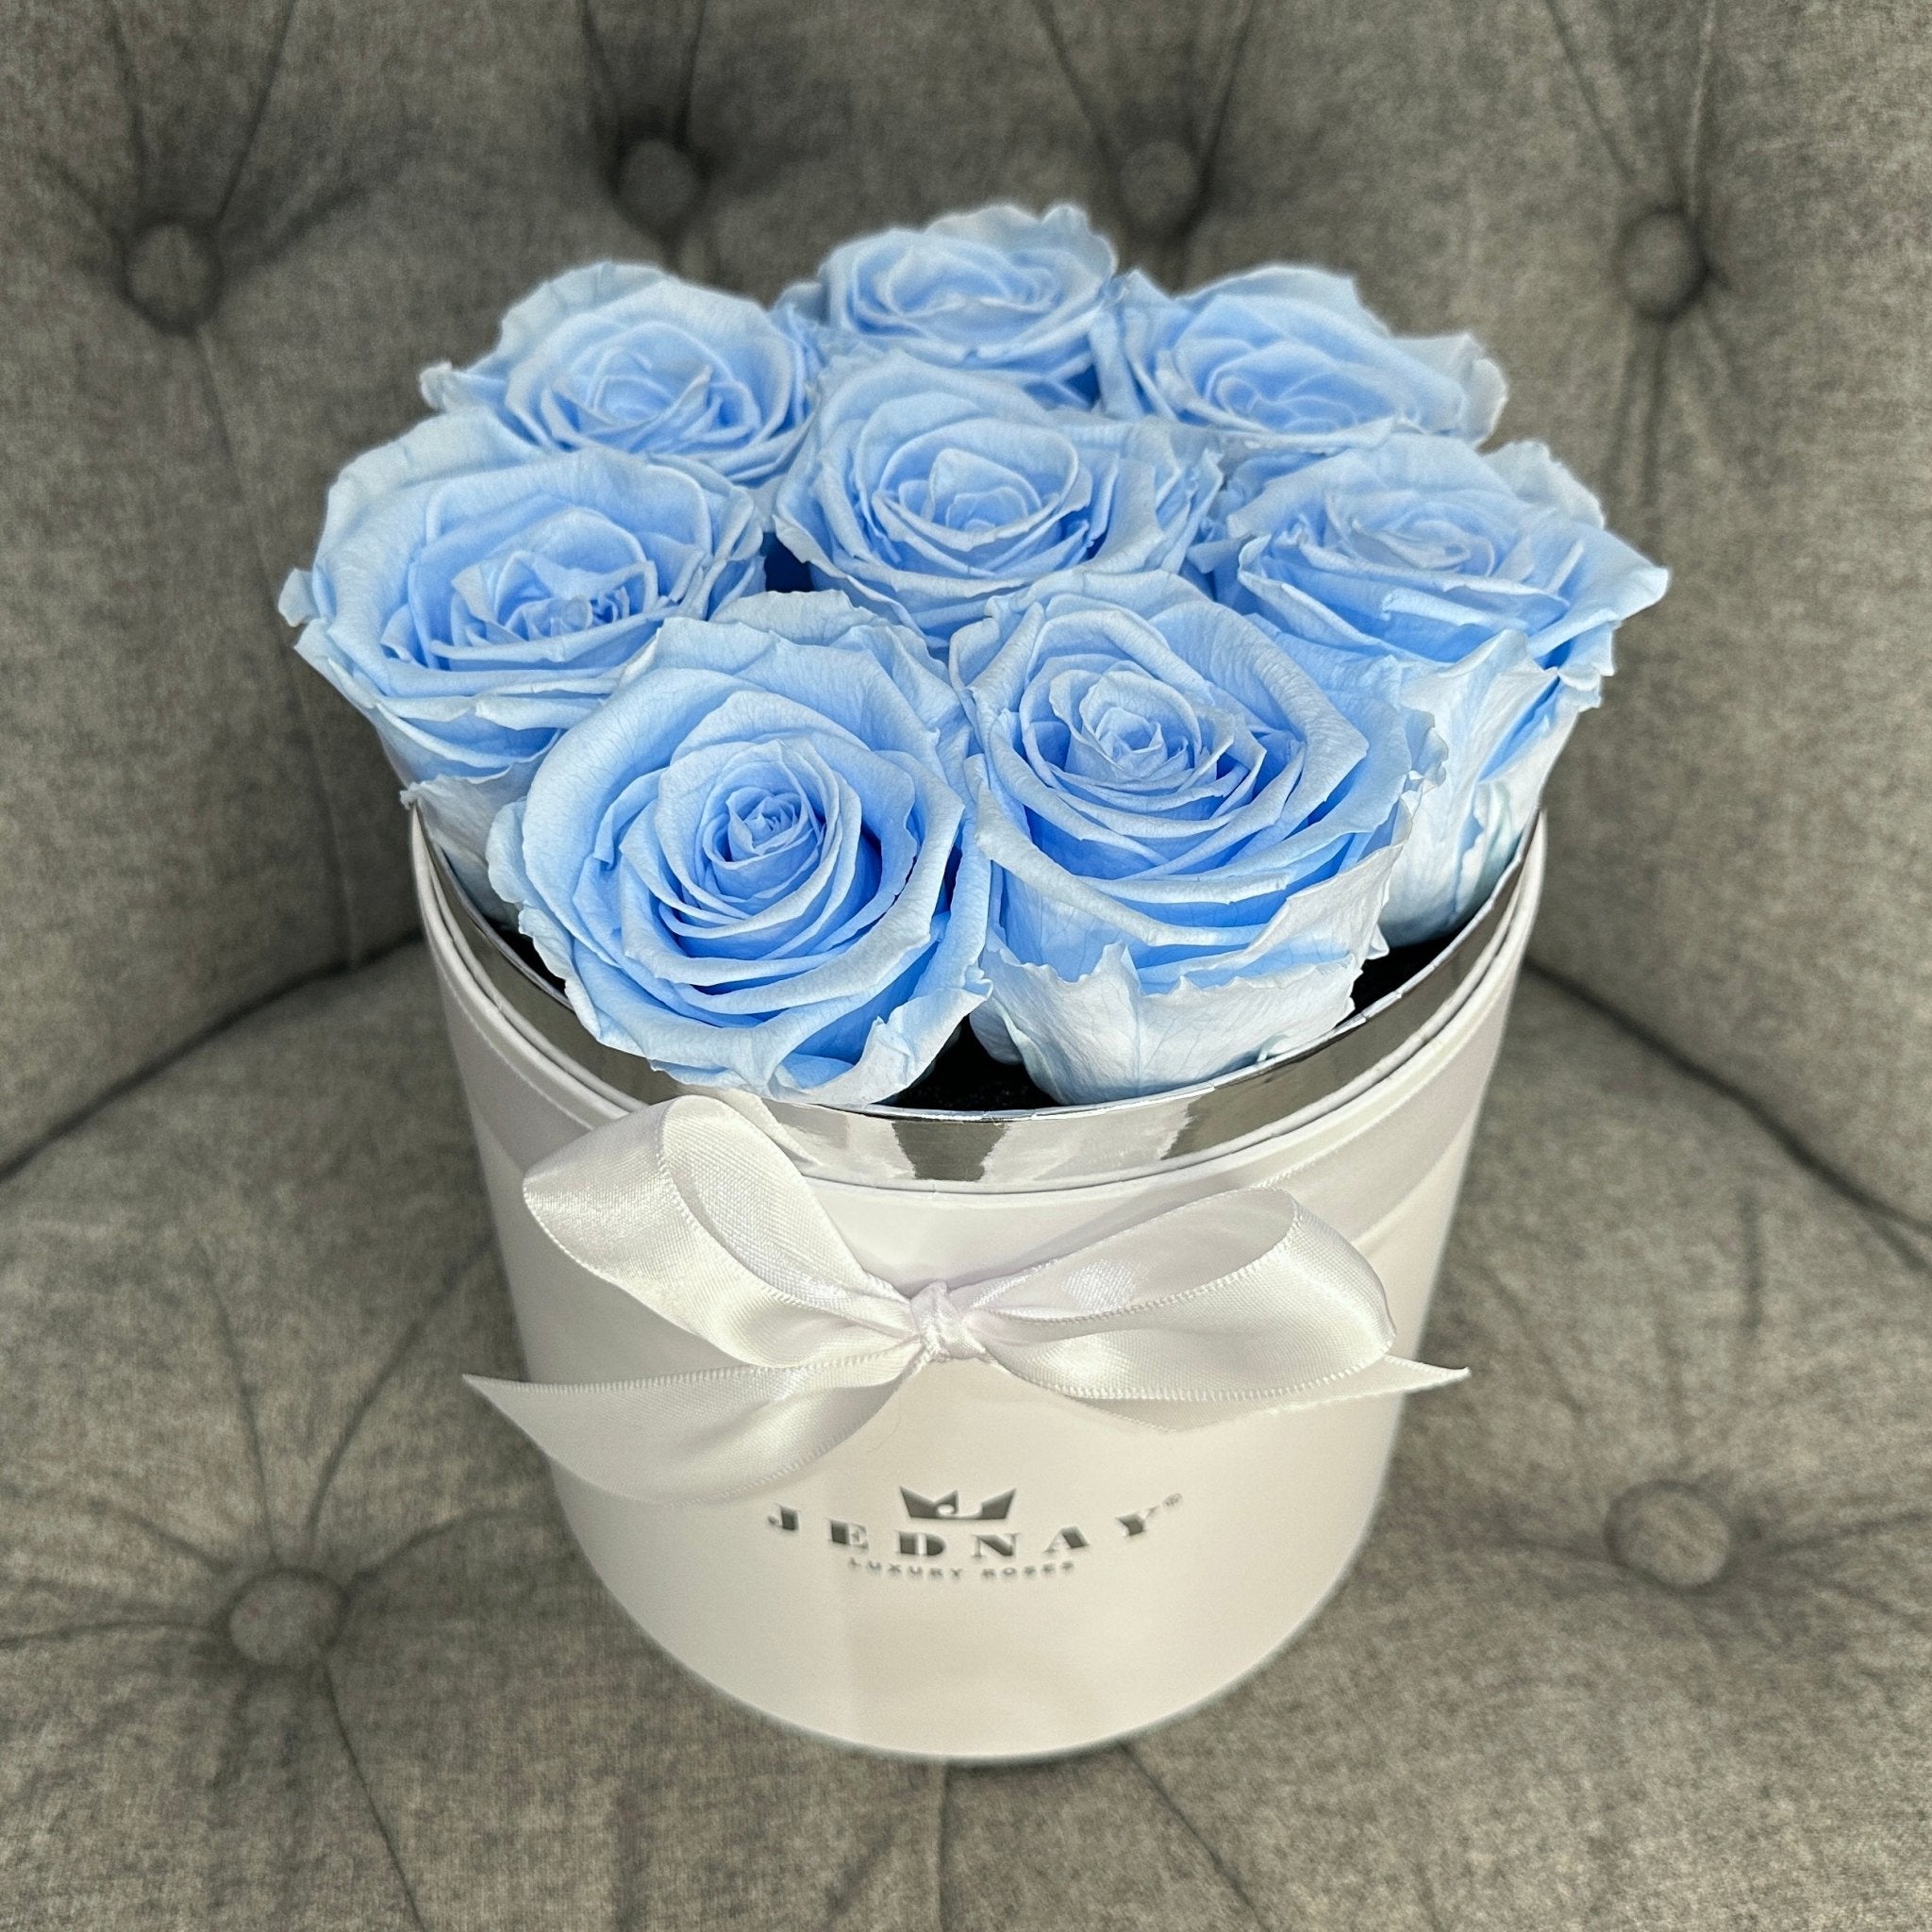 Medium Classic White Forever Rose Box - Sky Blue Eternal Roses - Jednay Roses